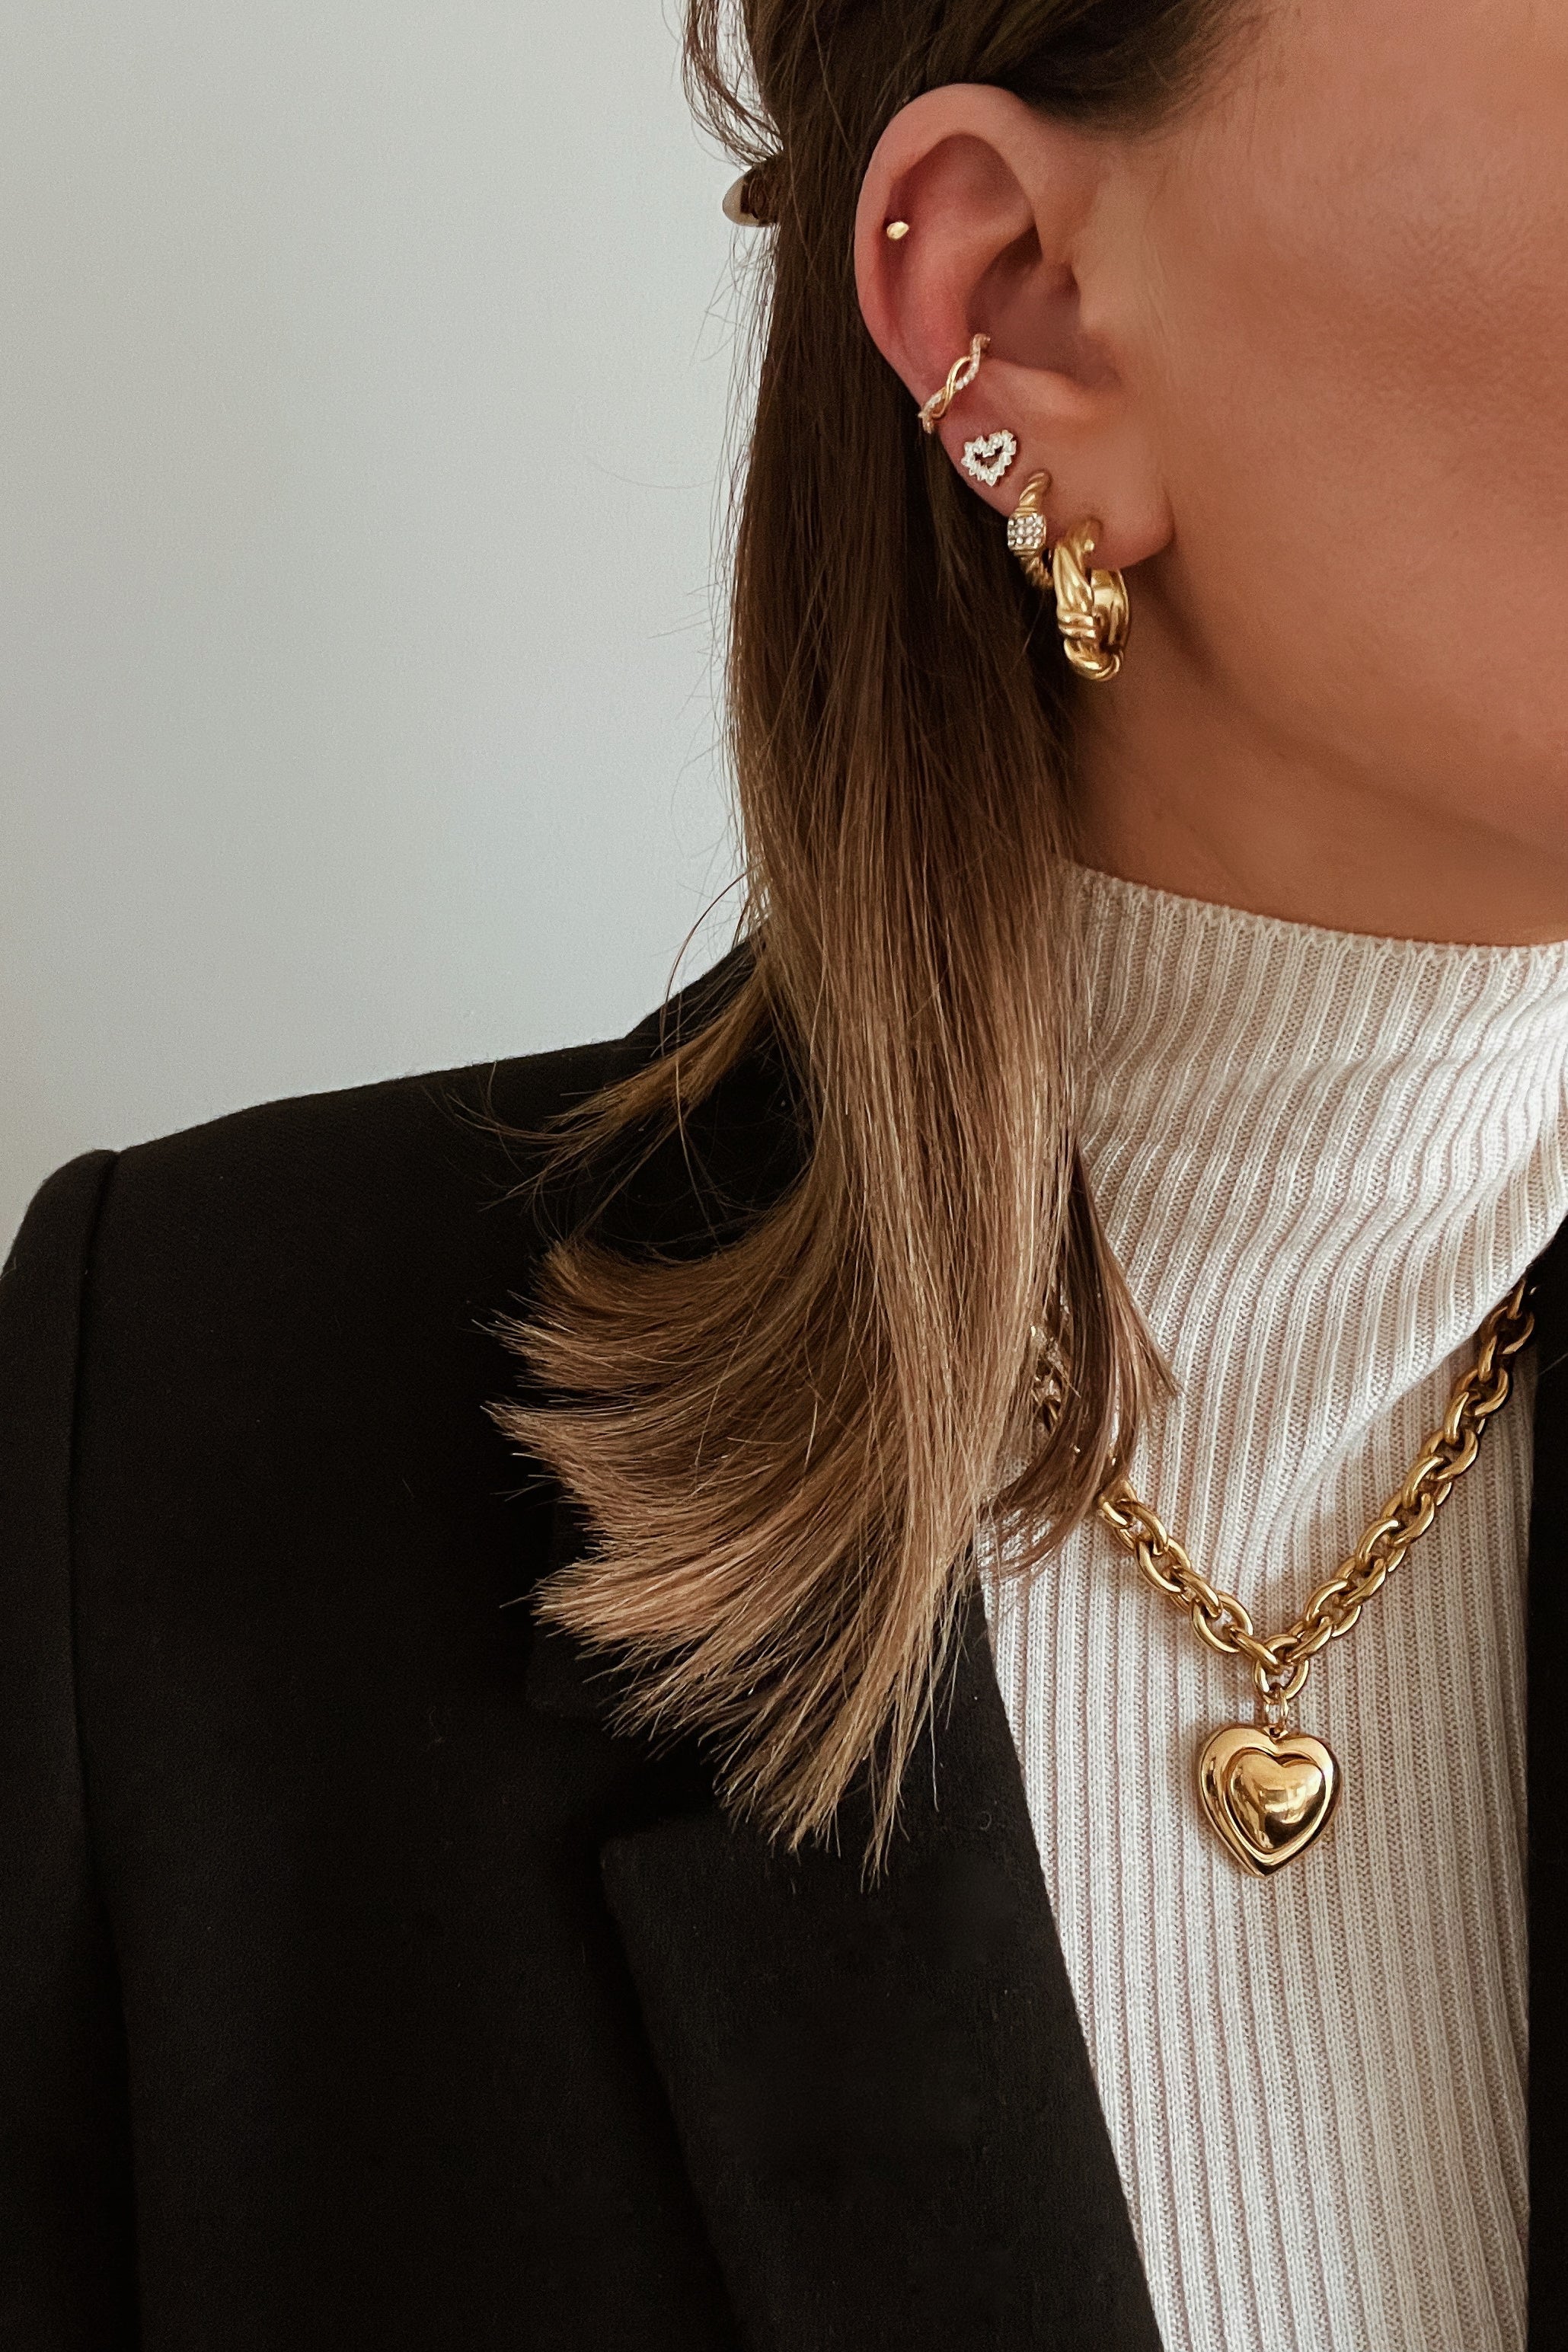 Josephine Hoop Earrings - Boutique Minimaliste has waterproof, durable, elegant and vintage inspired jewelry